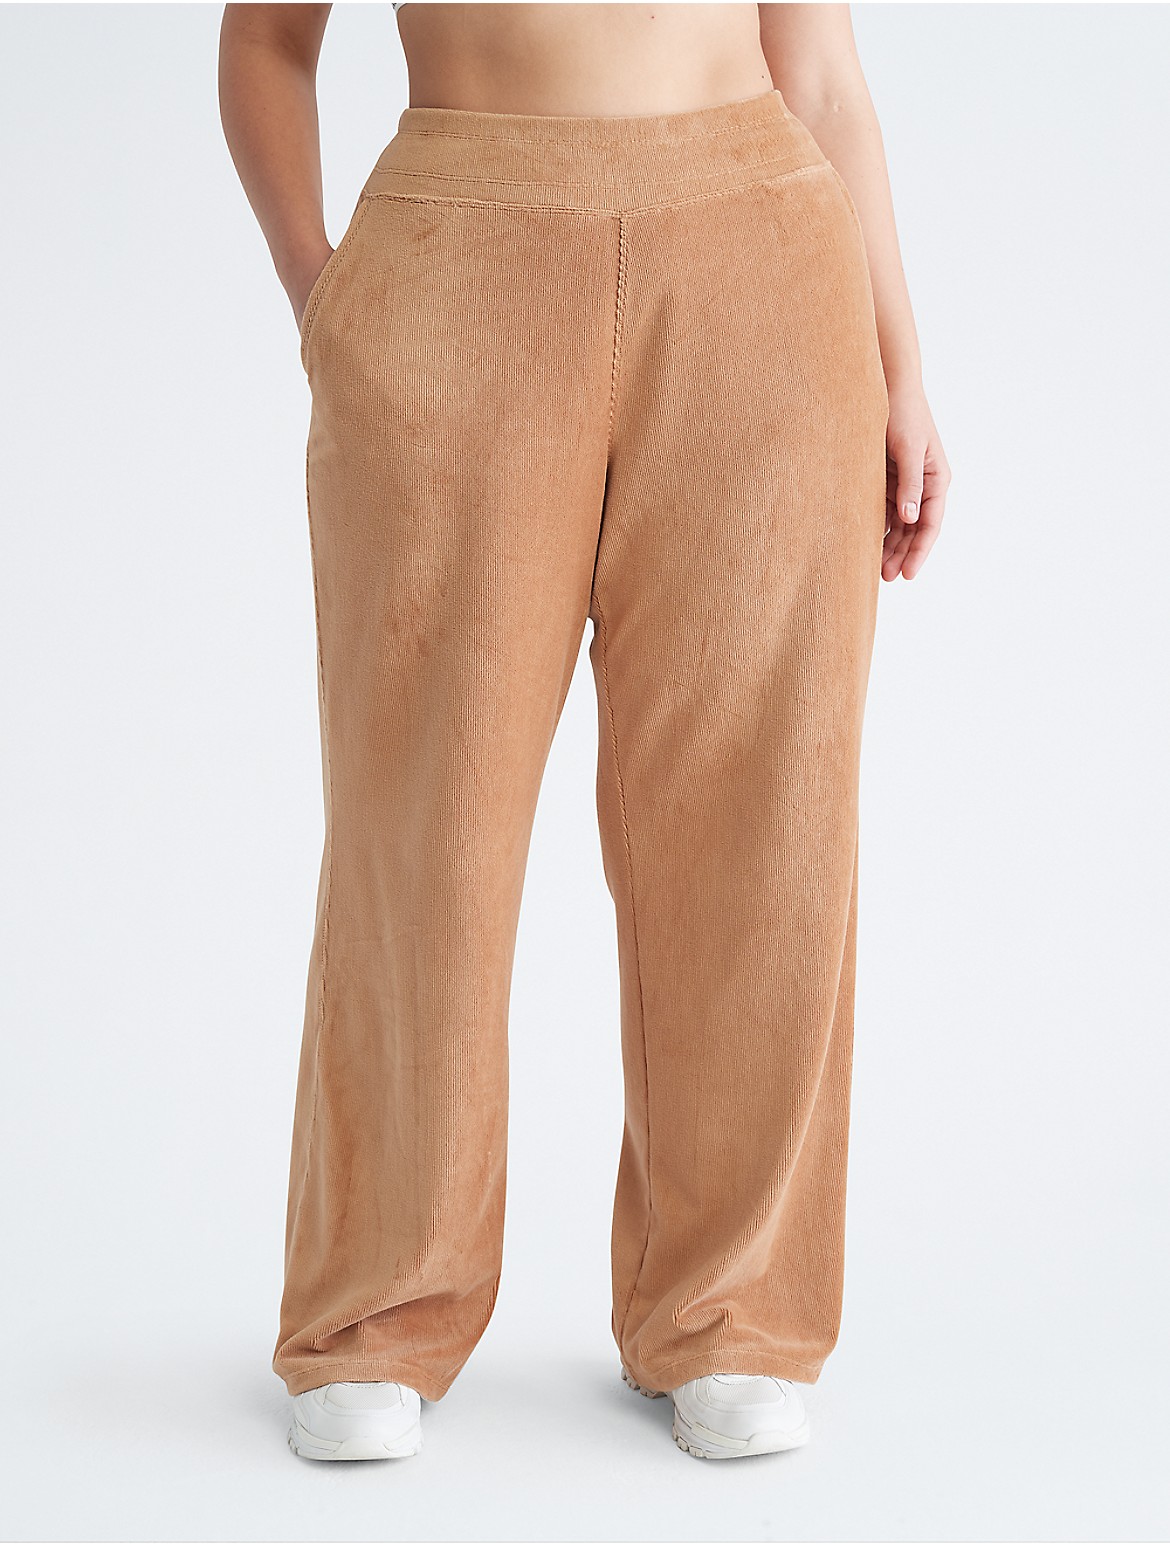 Calvin Klein Women's Plus Size Performance Wide Leg Pants - Brown - 3X